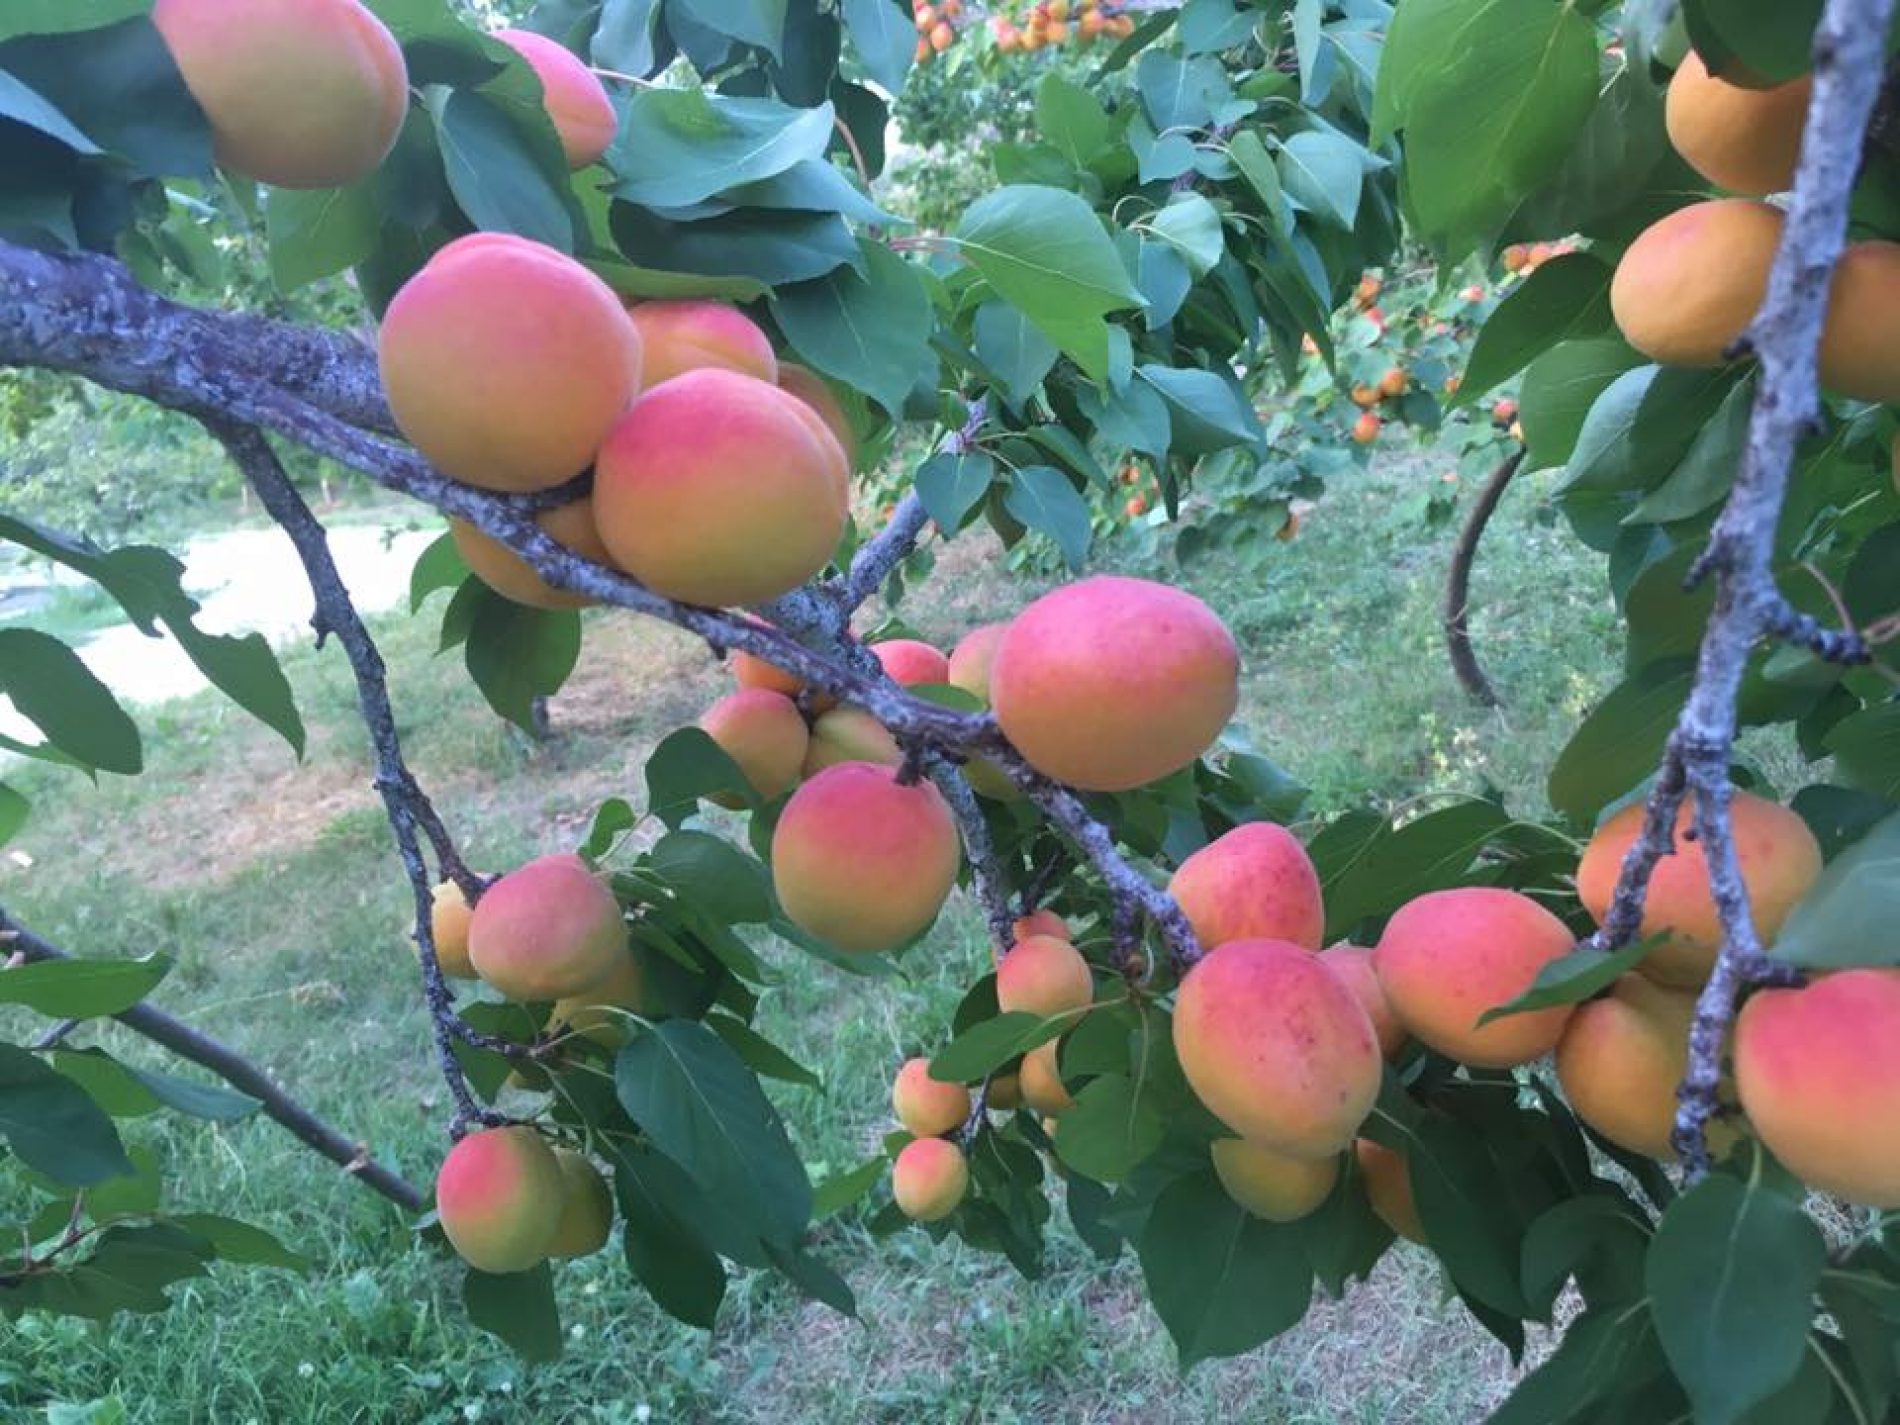 Pozitivna povratnička priča: U mjestu Koraj uspješno se bave proizvodnjom voća